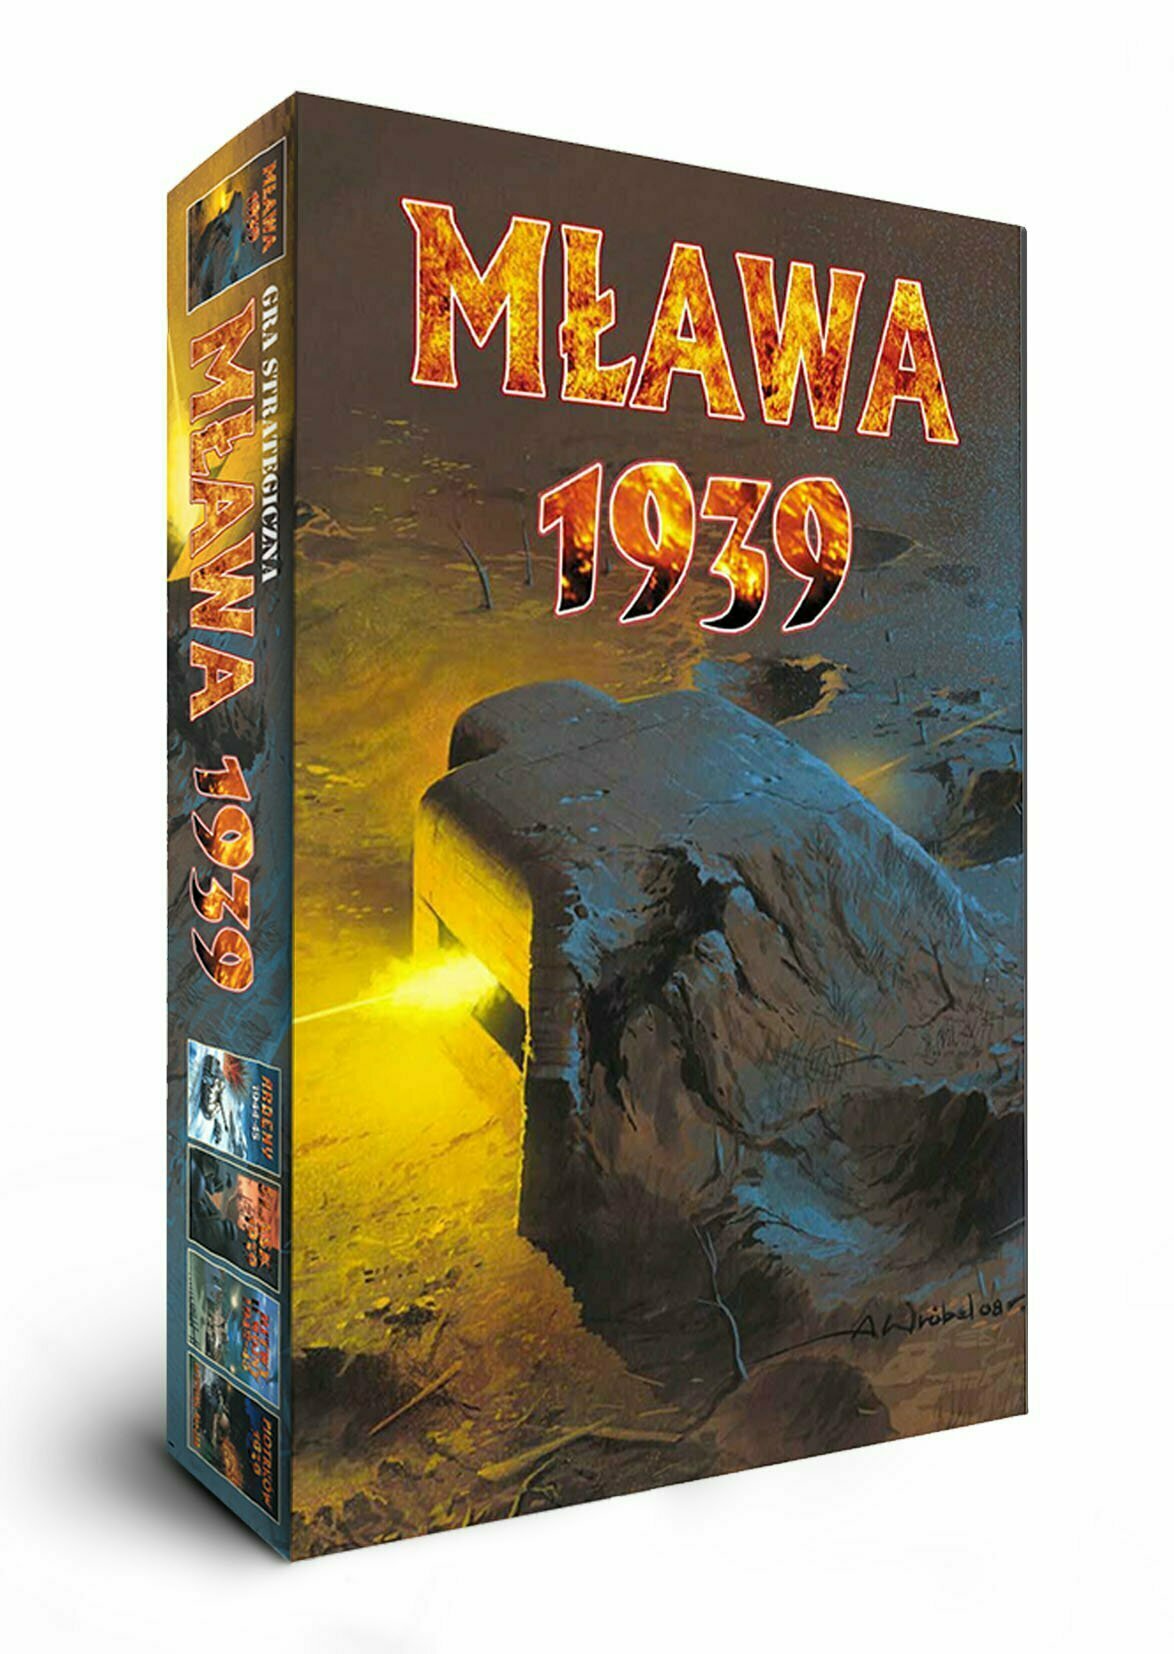 Mlawa 1939 battle